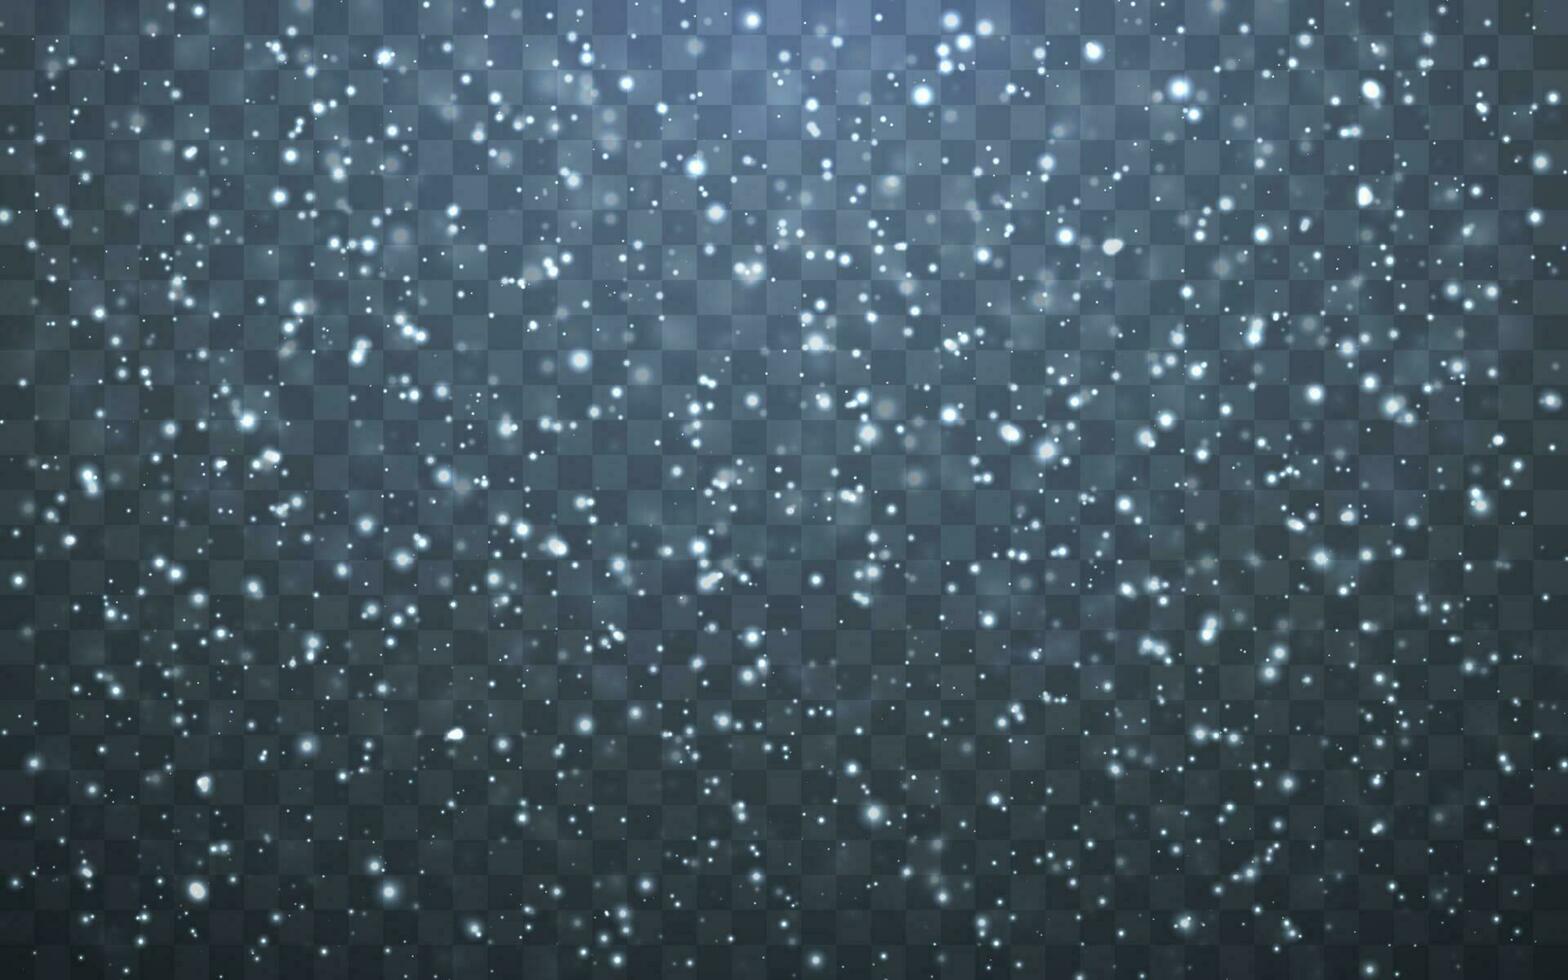 Natale neve. caduta i fiocchi di neve su buio sfondo. nevicata. vettore illustrazione